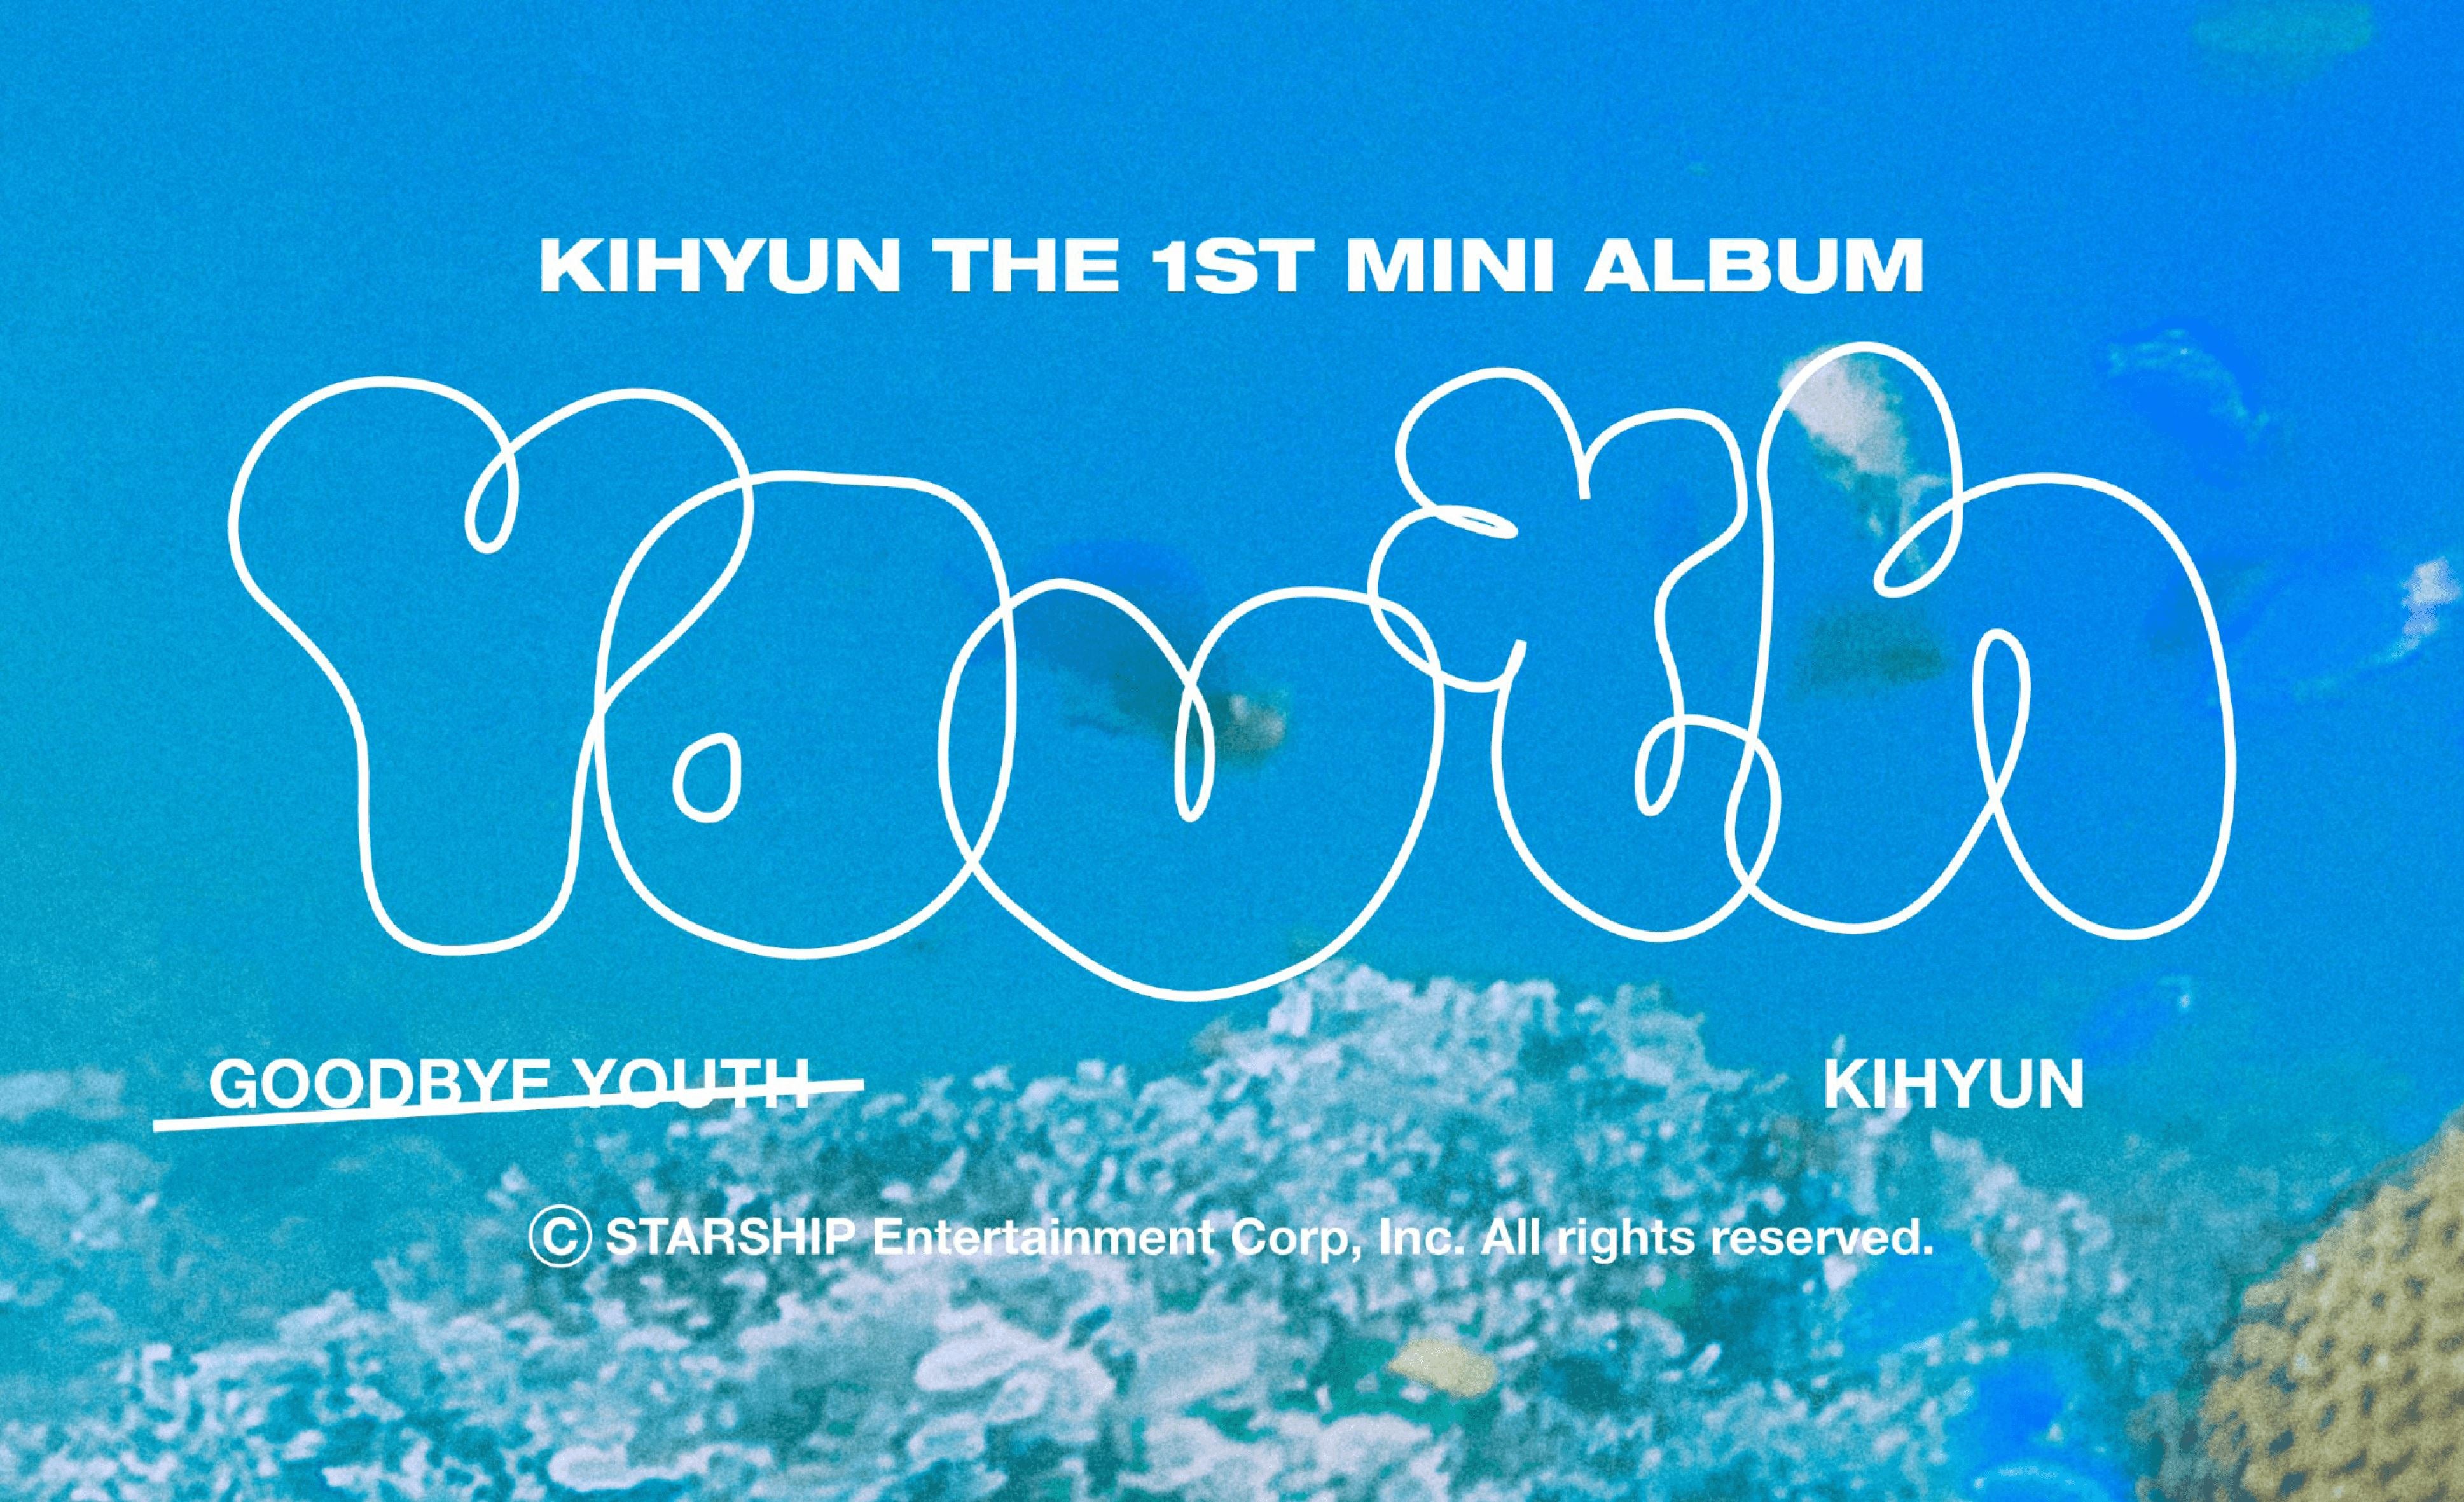 Kihyun kehrt mit seinem ersten Mini-Album zurück!